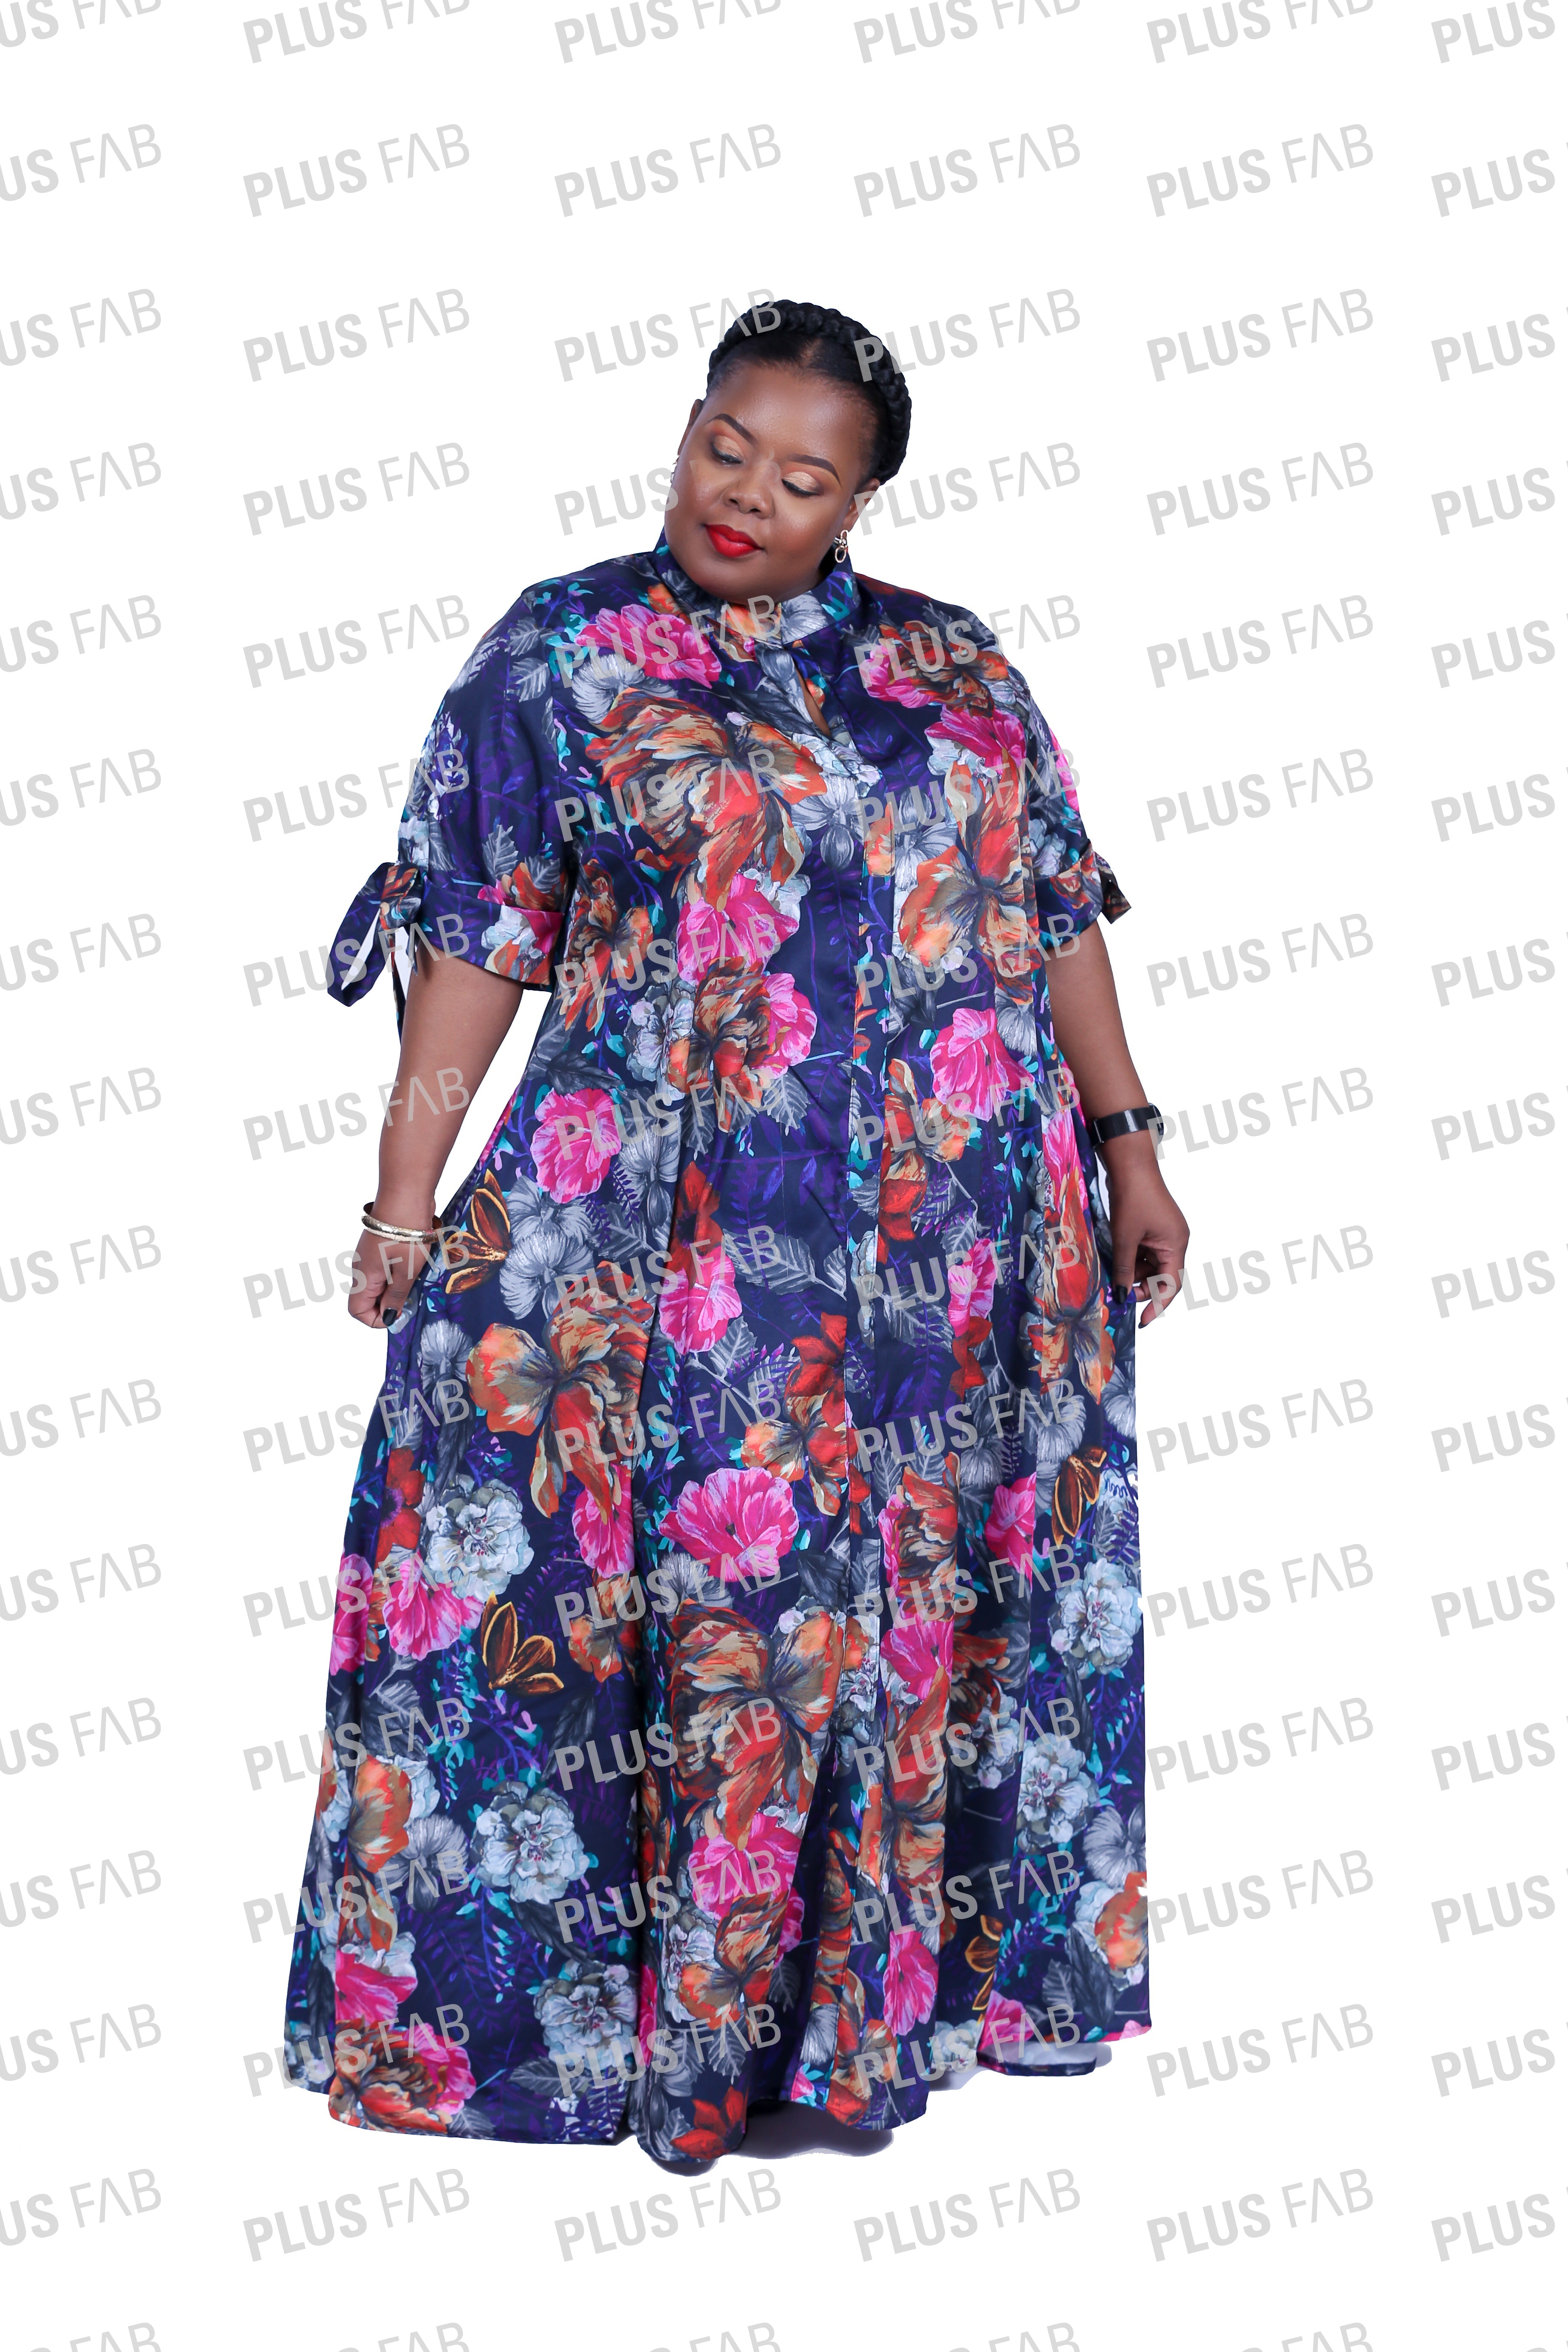 Vuyiswa Dress - plus-fab.com